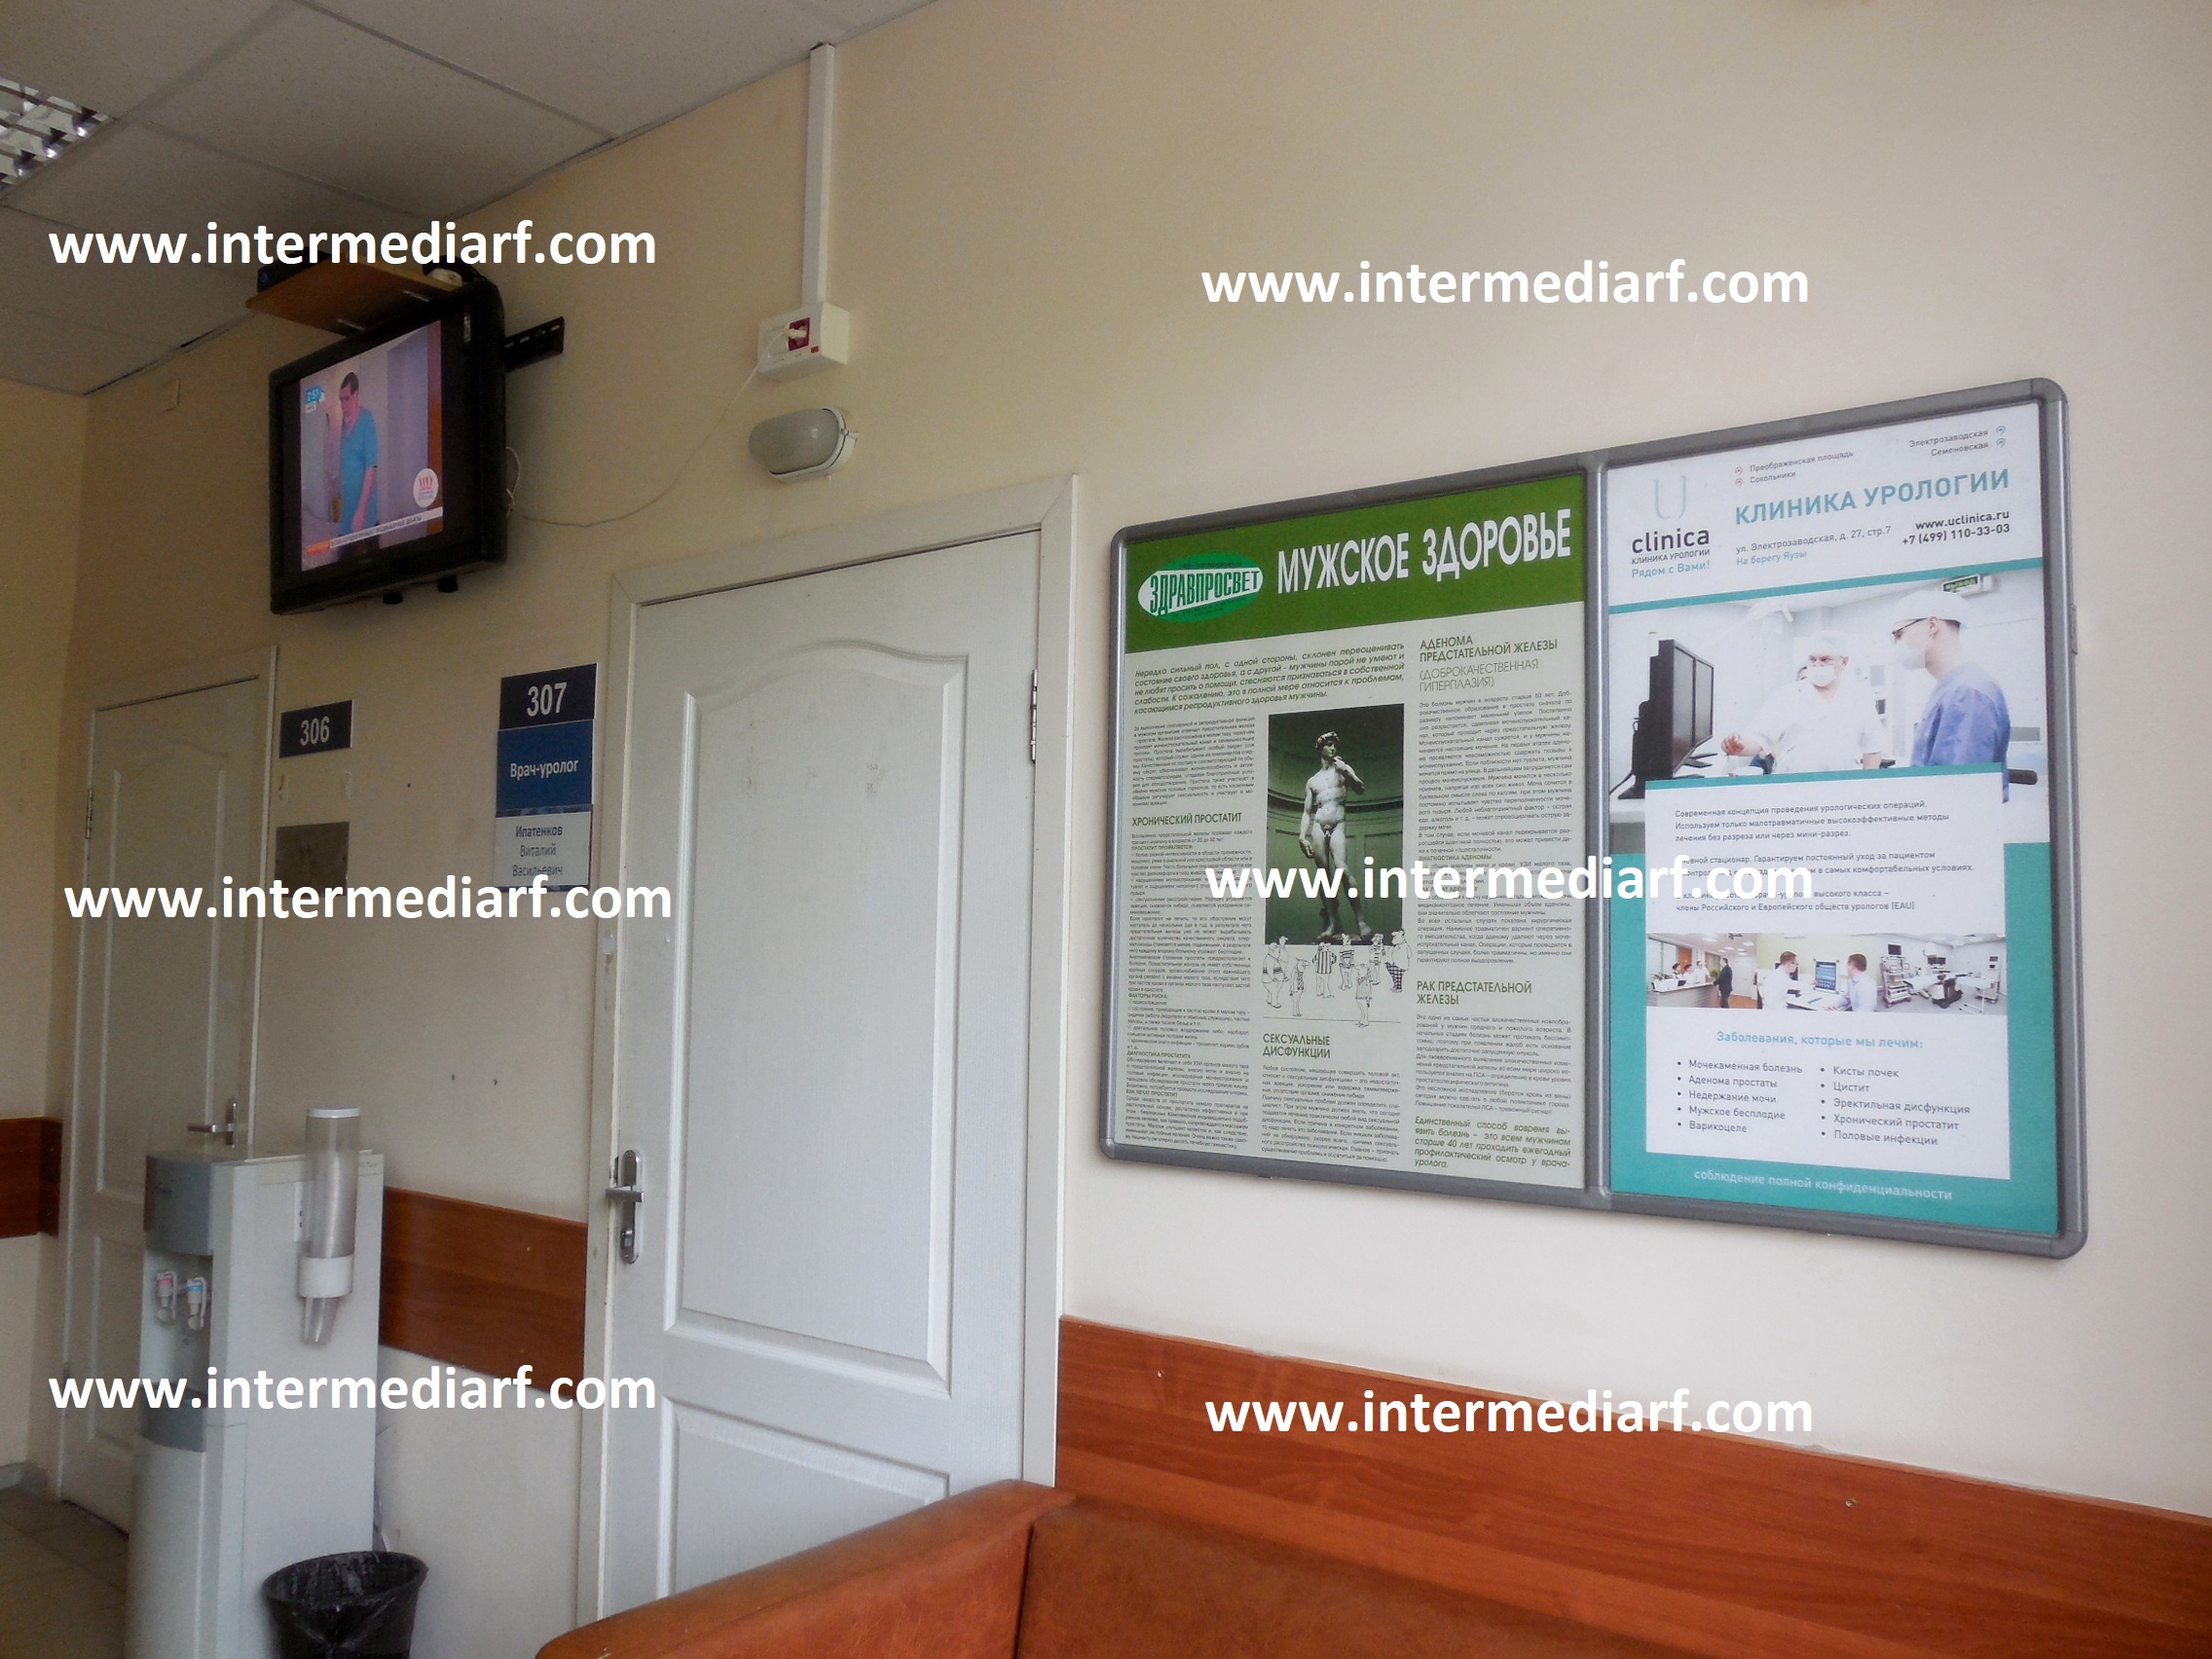 Медицинские клиники урология. Рекламы медицинских учреждений. Плакаты в поликлиниках. Реклама поликлиники. Экраны в поликлиниках.